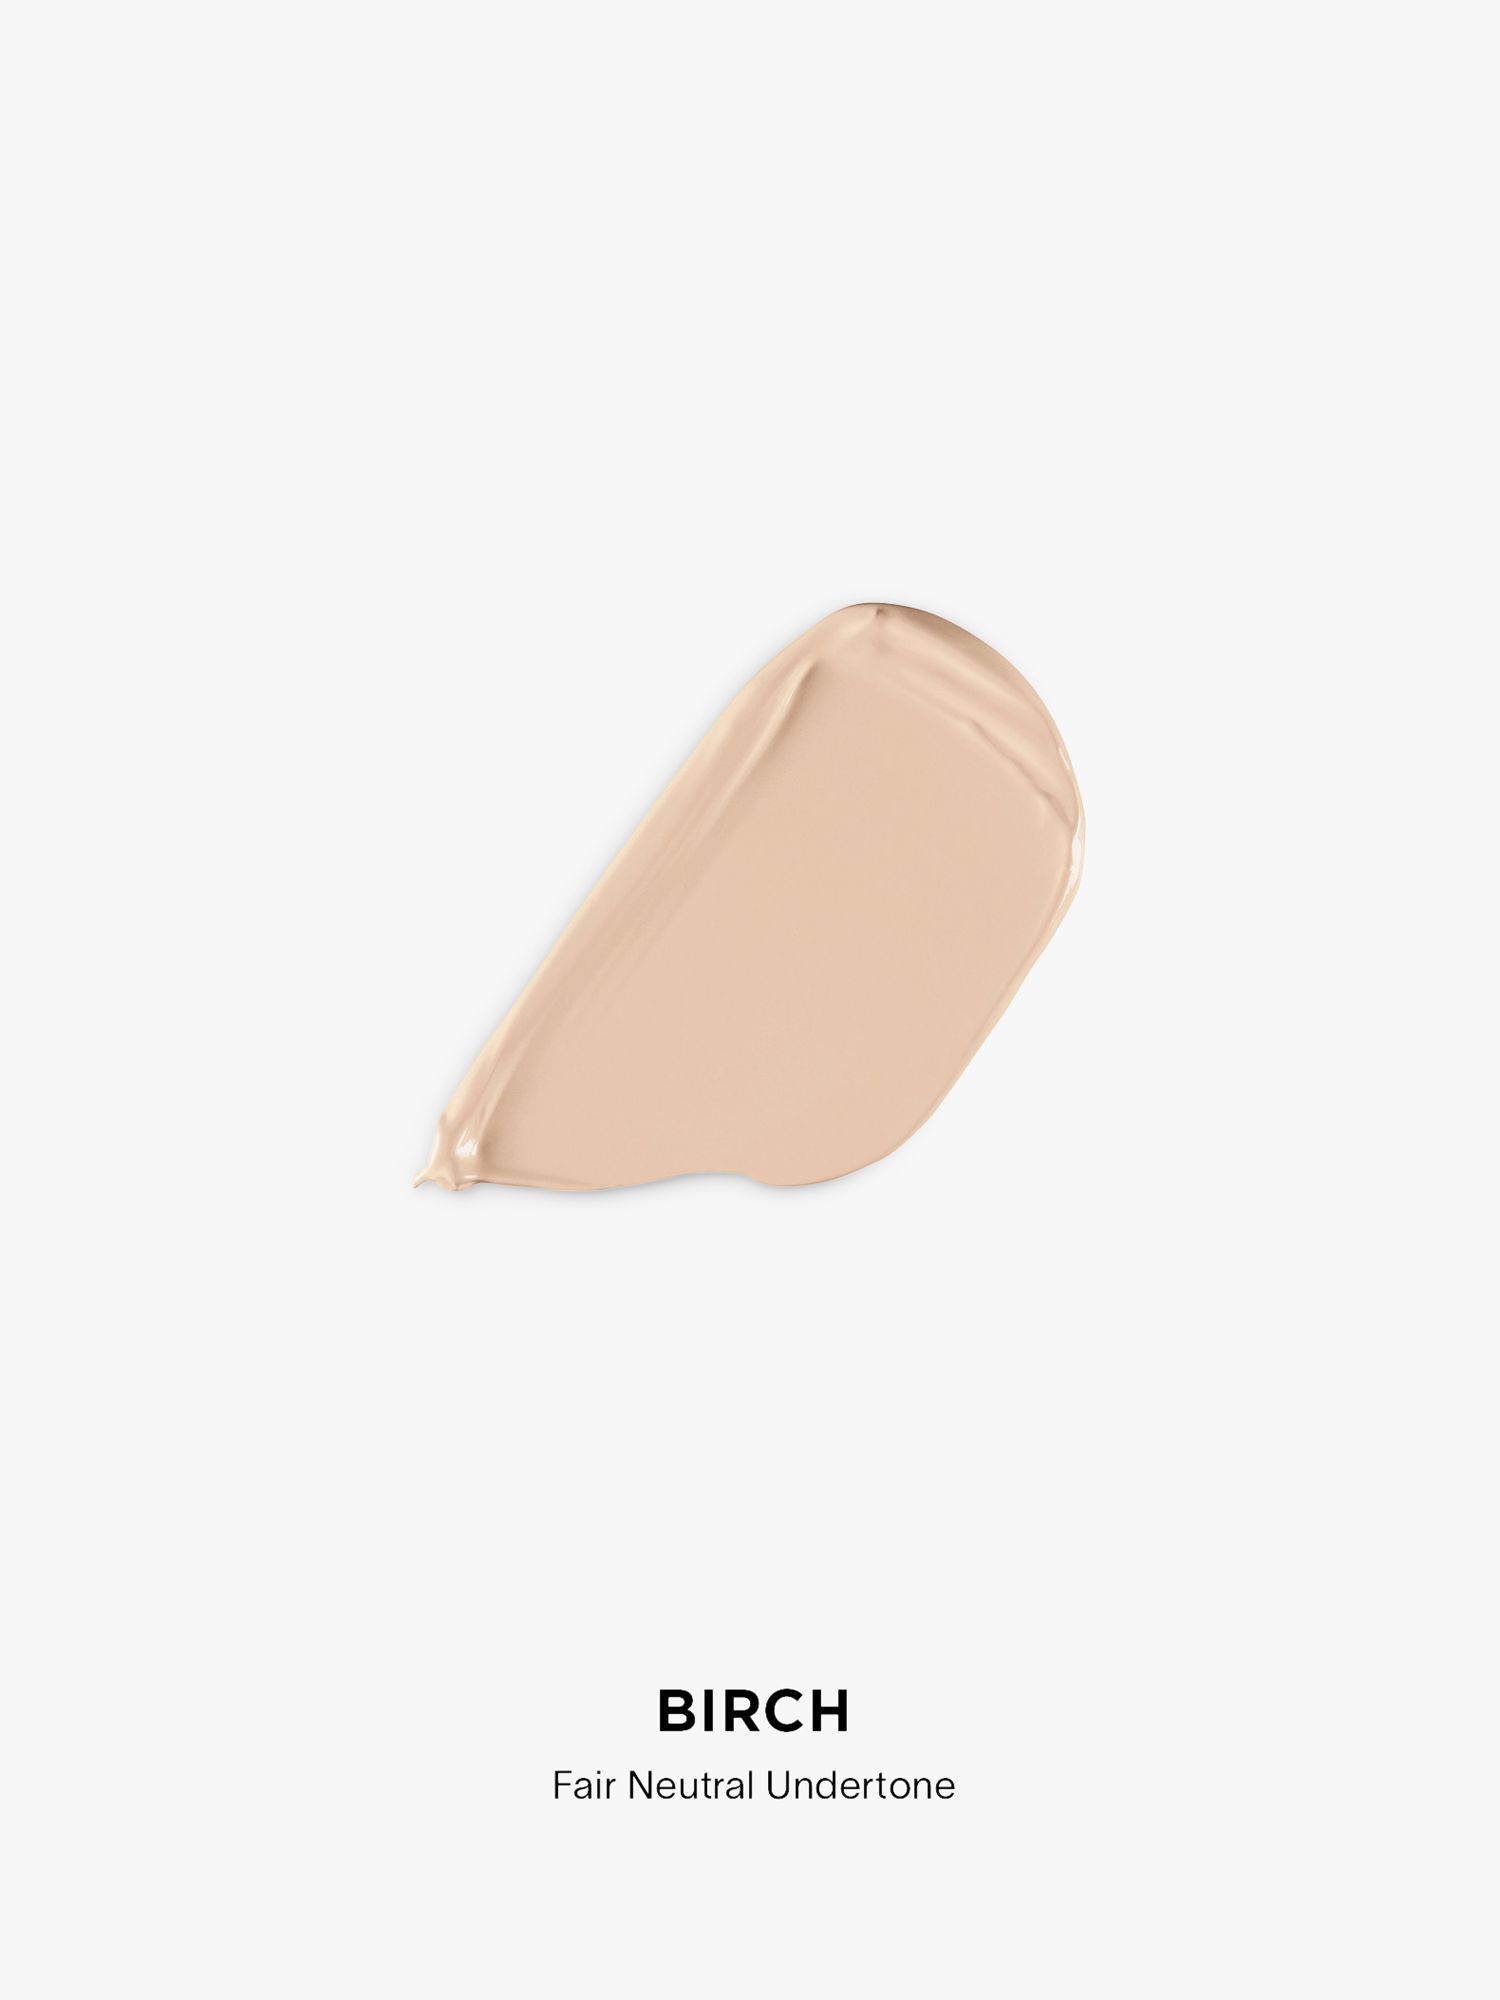 Hourglass Vanish™ Airbrush Concealer, Birch